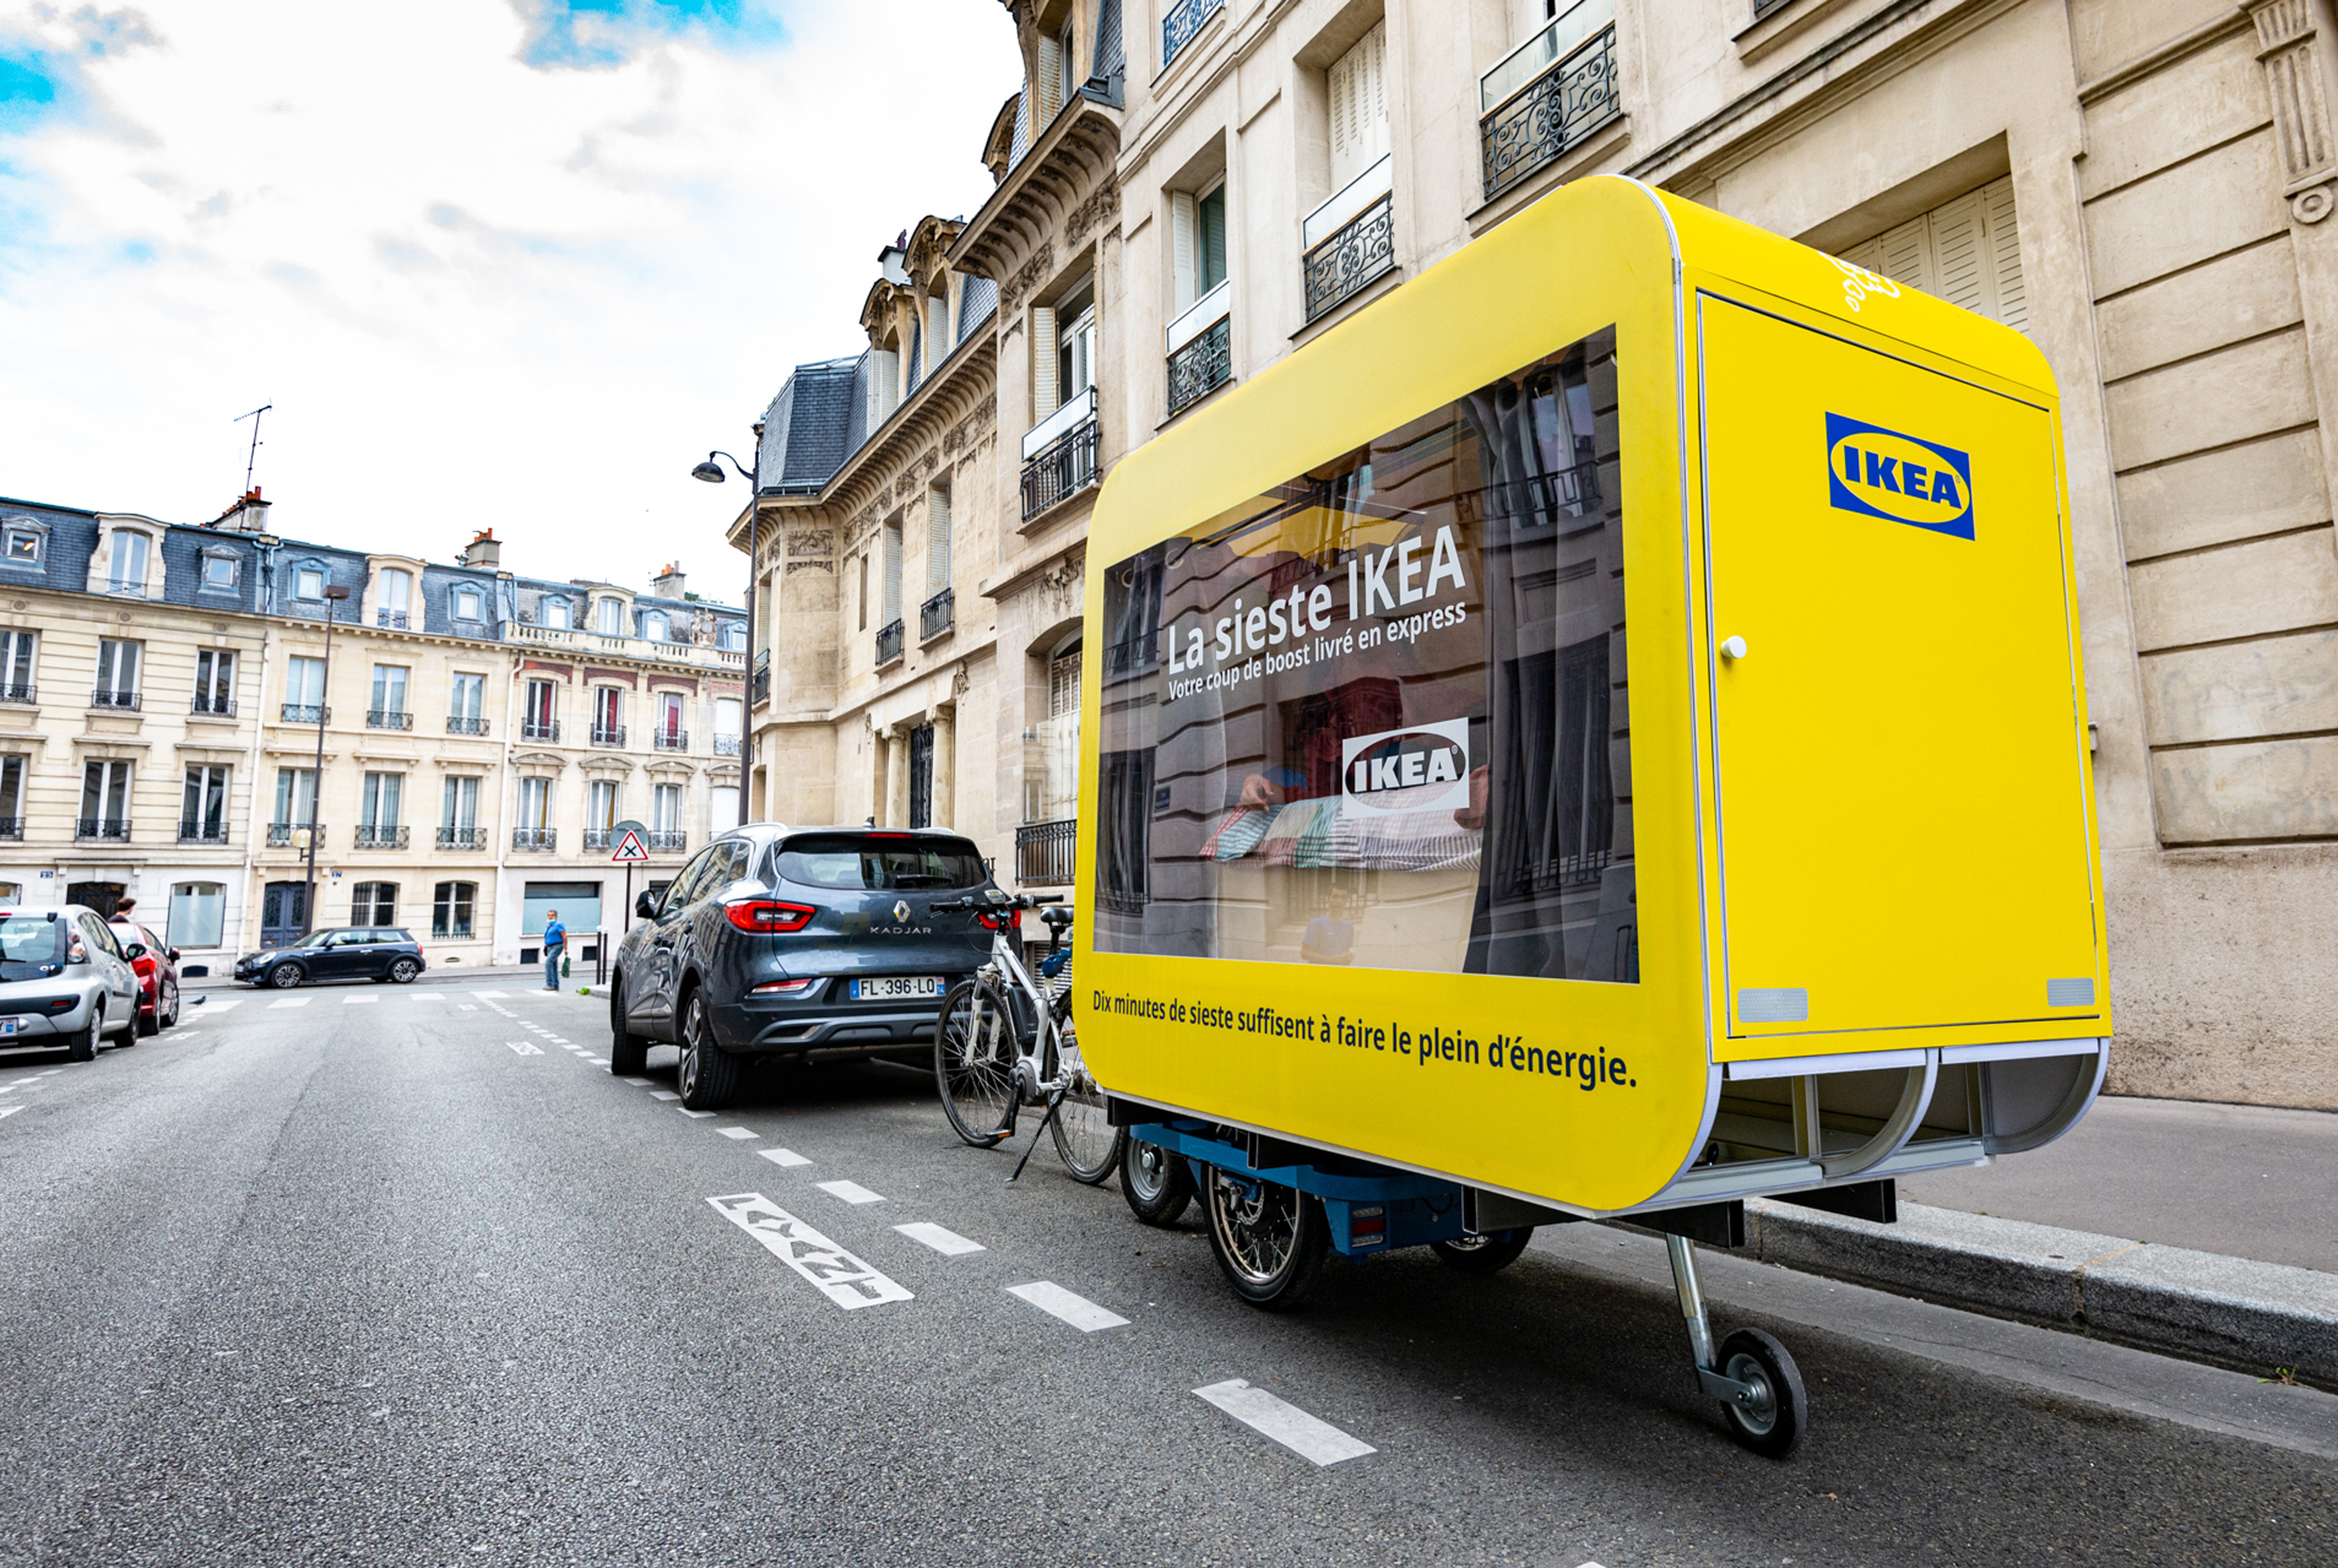 Boende i Paris kunde ta en tupplur i Ikeas portabla cykelsängar.